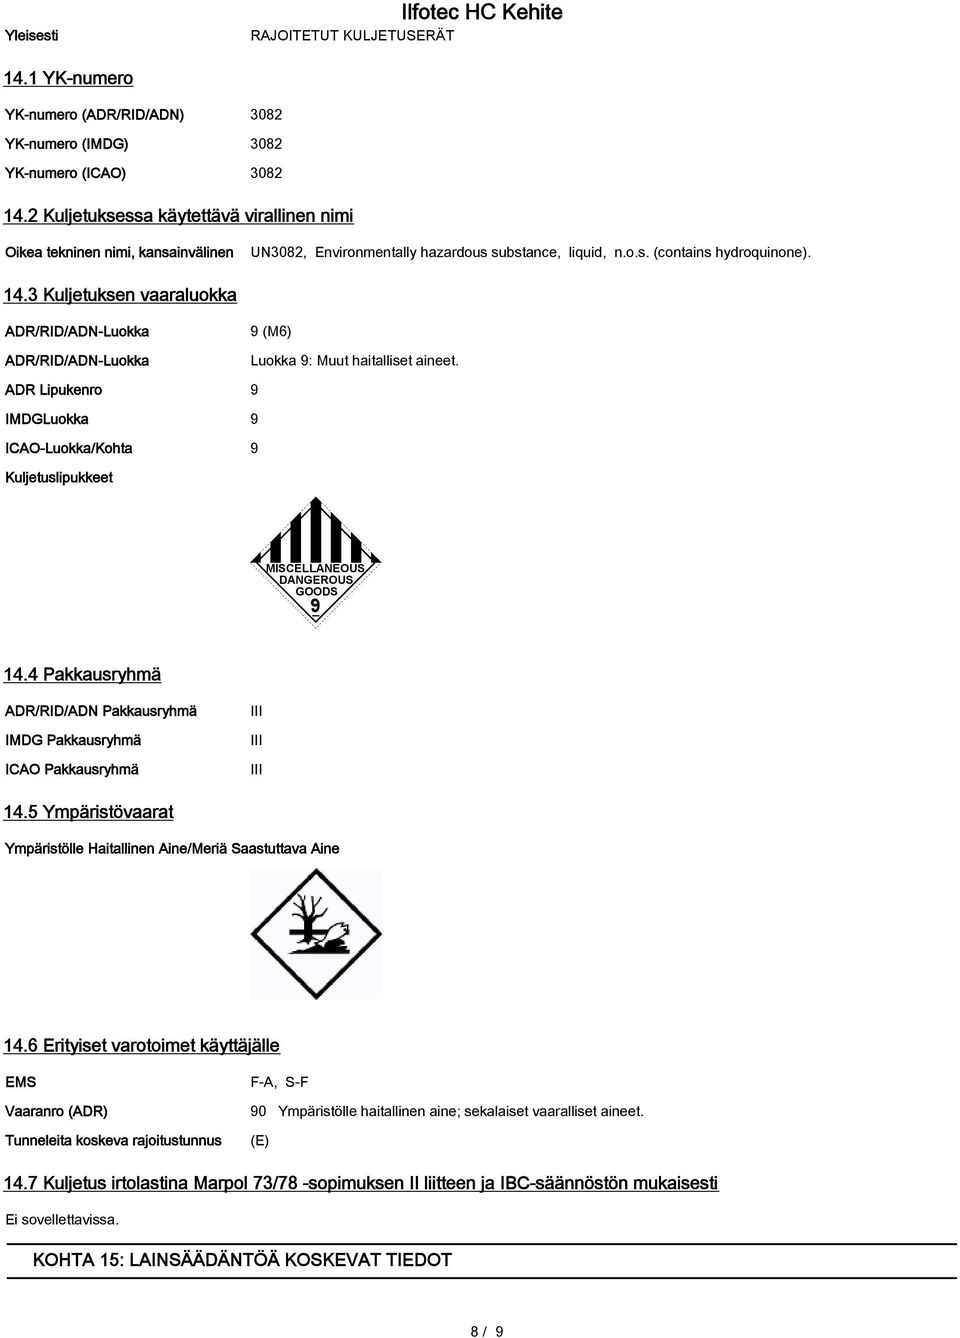 3 Kuljetuksen vaaraluokka ADR/RID/ADN-Luokka ADR/RID/ADN-Luokka 9 (M6) Luokka 9: Muut haitalliset aineet.